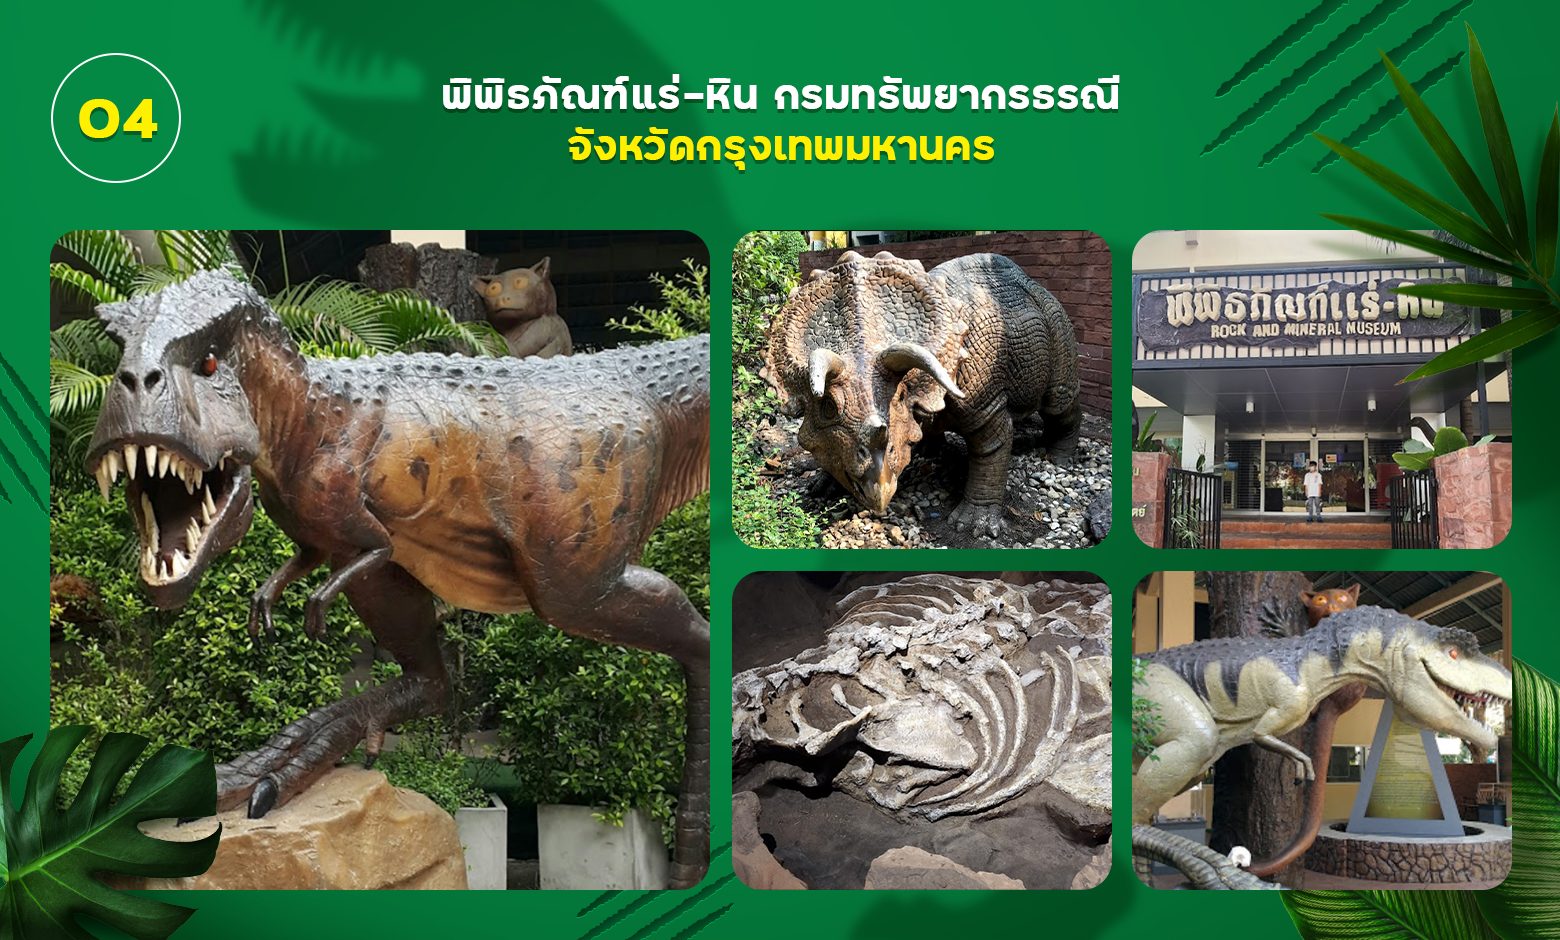 พิพิธภัณฑ์แร่-หิน และสวนไดโนเสาร์กรมทรัพยากรธรณี กรุงเทพมหานคร